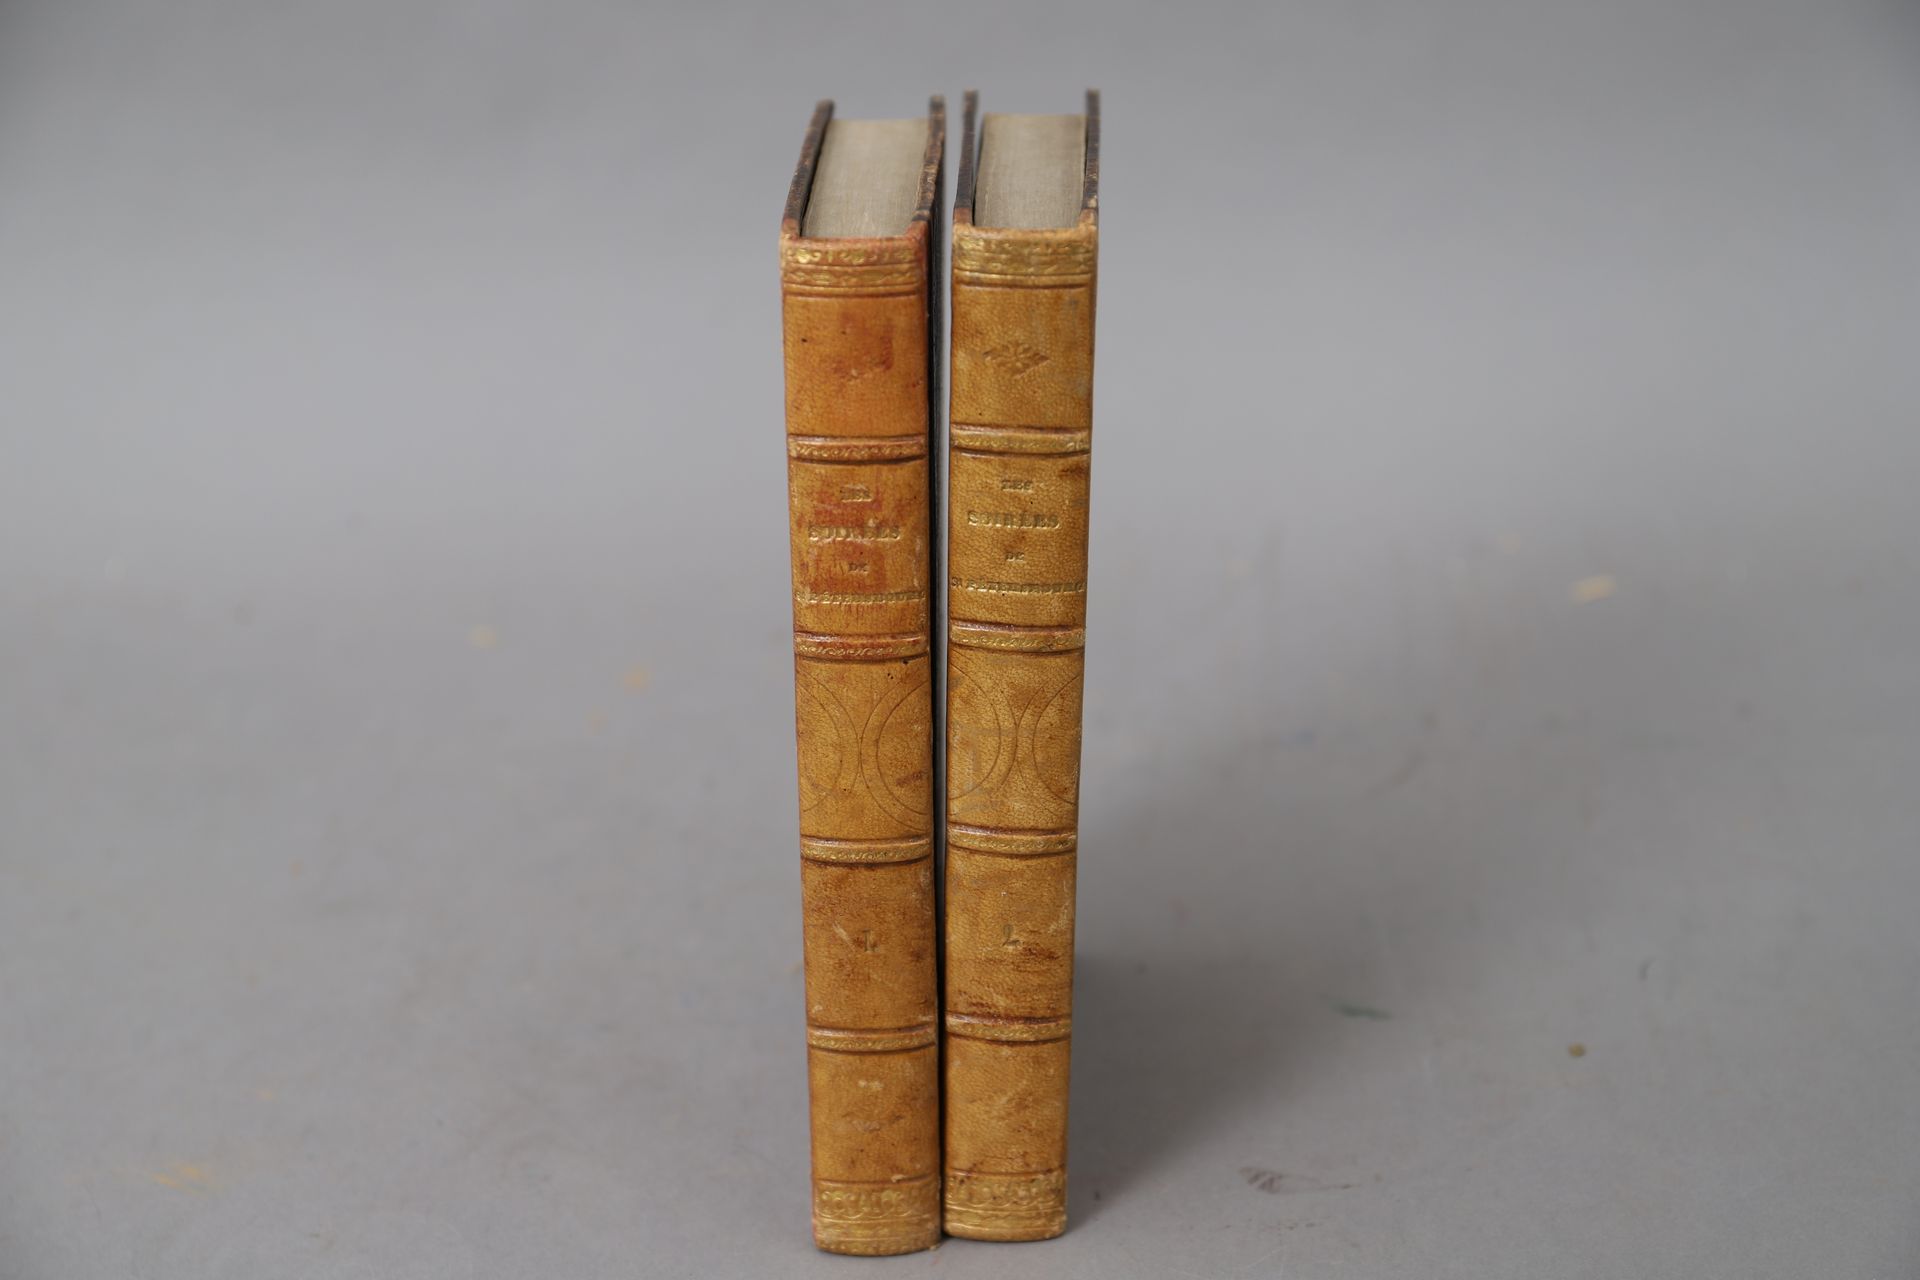 Null LES SOIREES de SAINT-PETERSBOURG

2 volumes